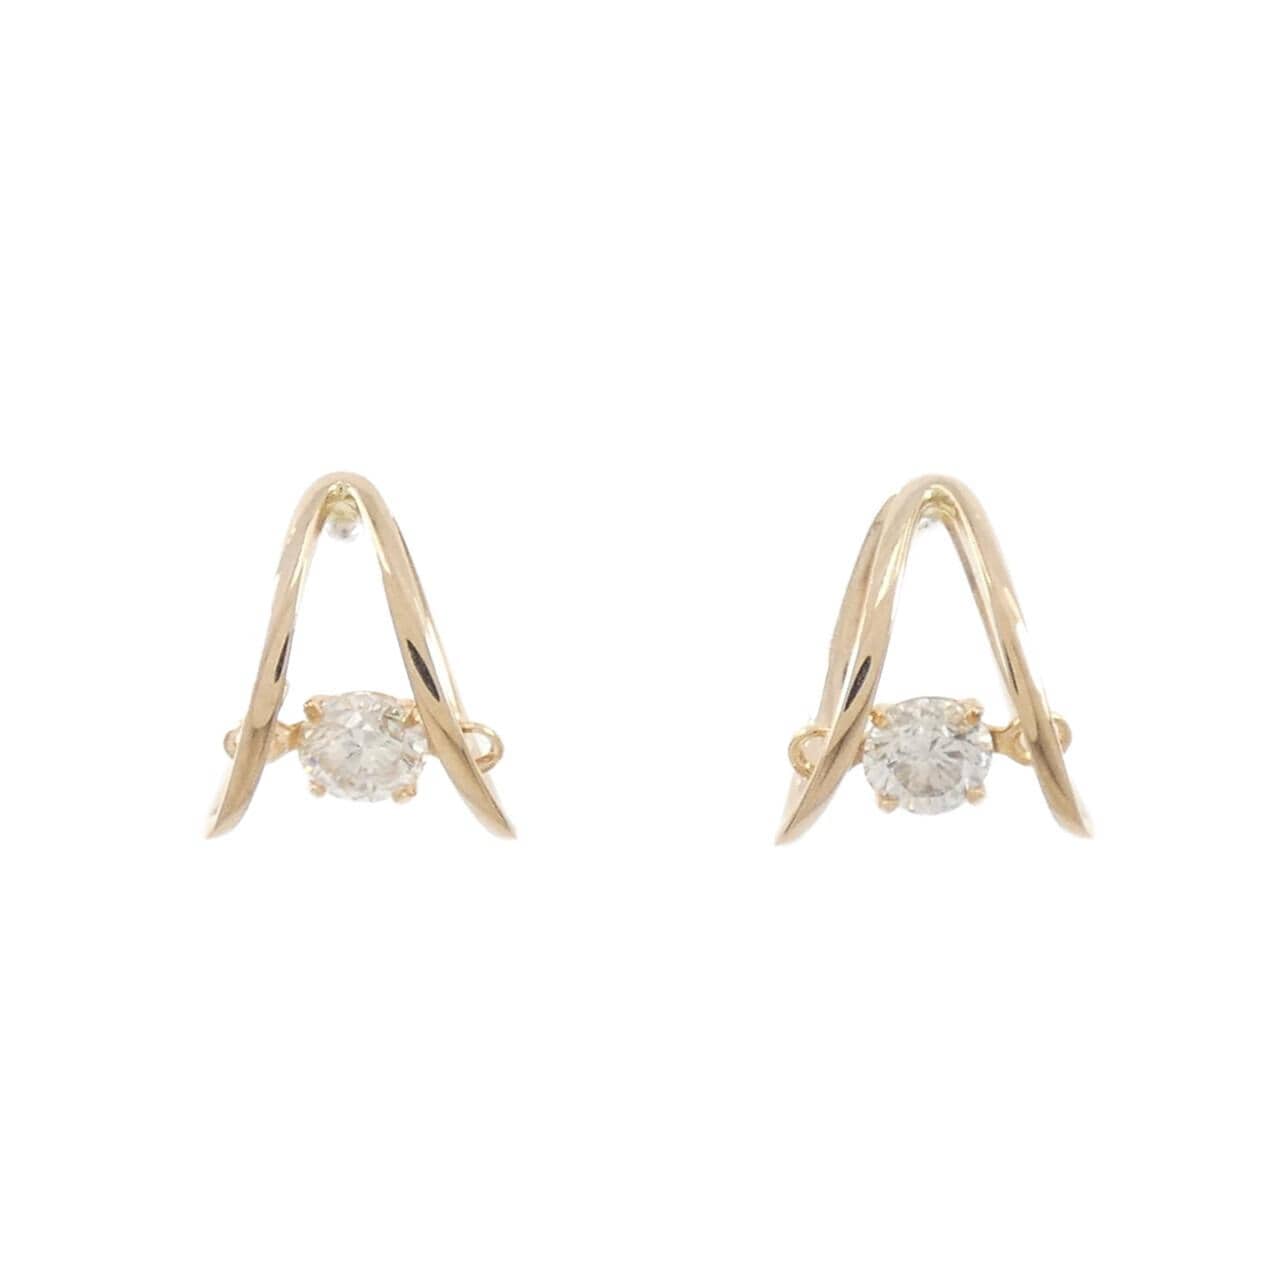 K18PG Diamond earrings 0.20CT